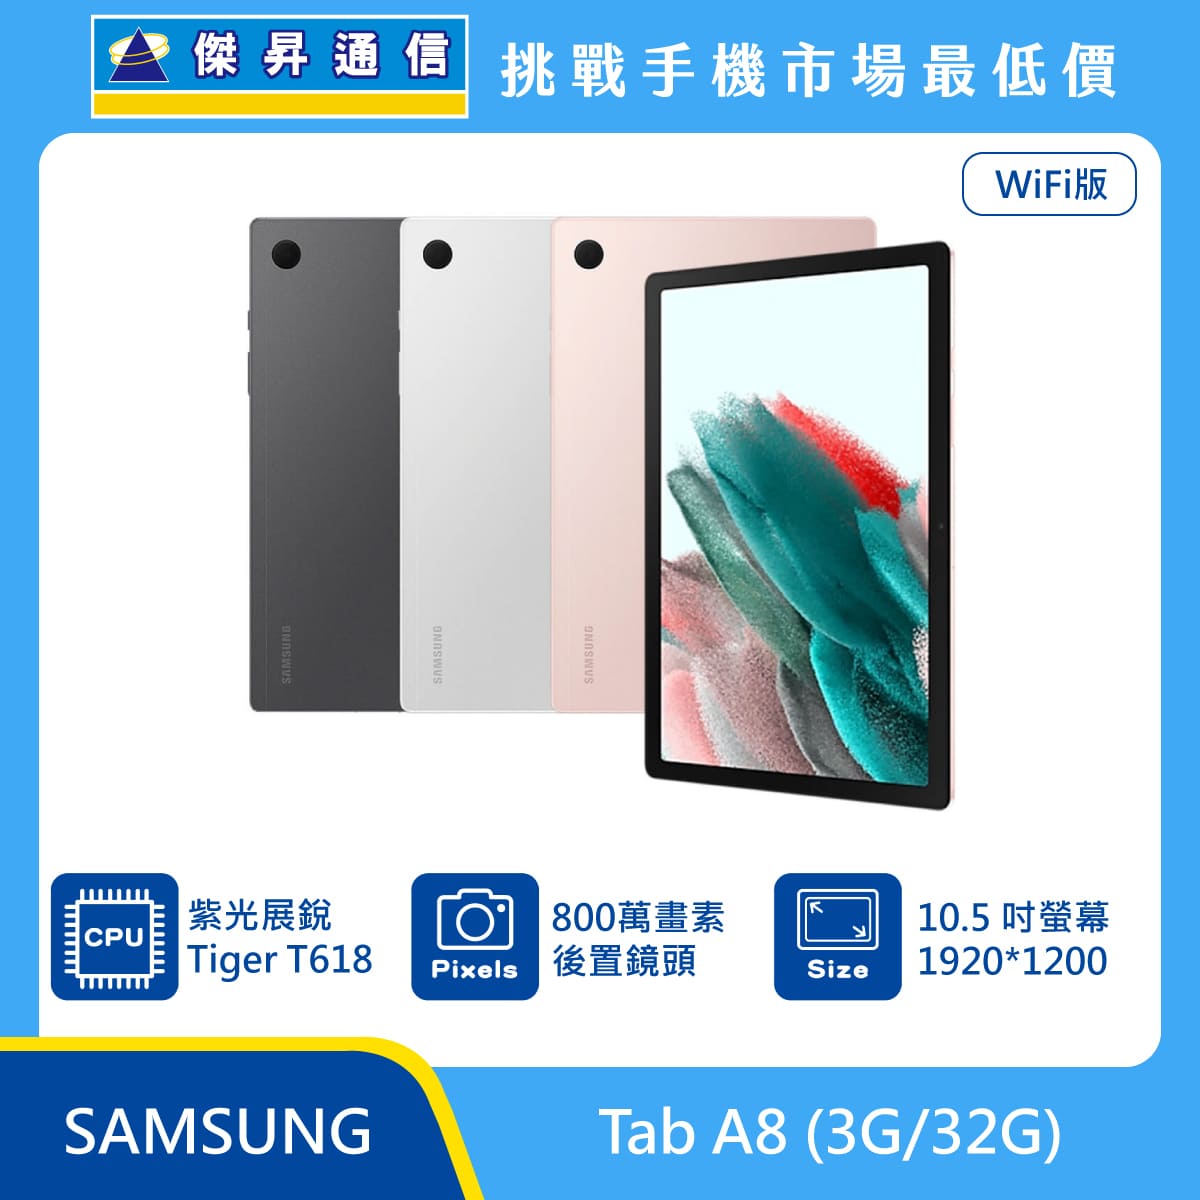 SAMSUNG 平板 Tab A8 Wi-Fi (3G/32G)